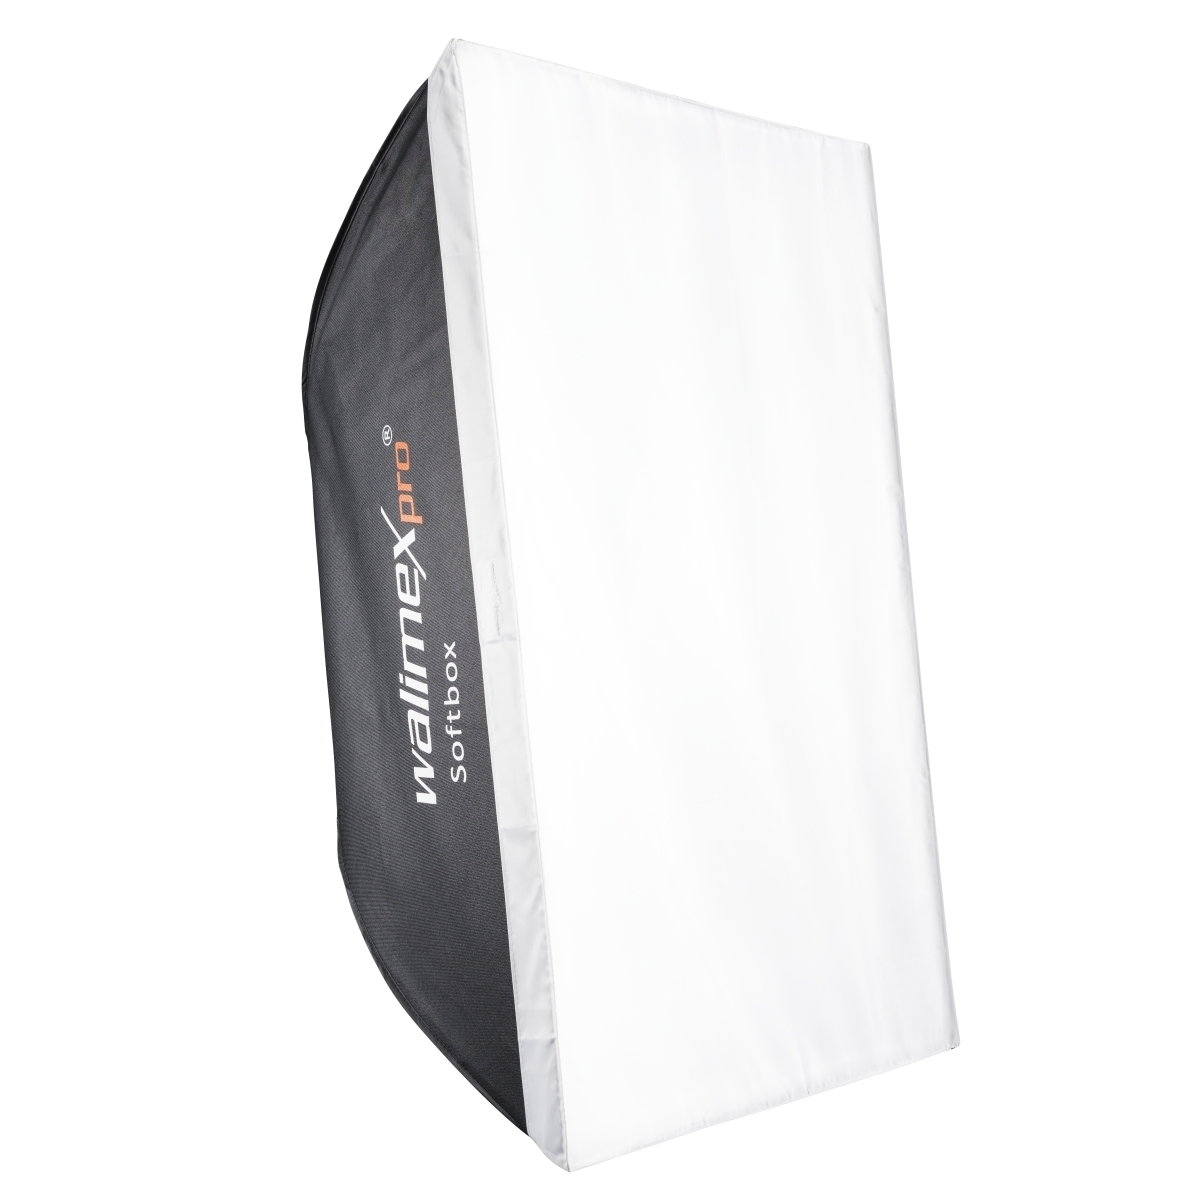 Walimex pro Softbox 60x90cm für Aurora/Bowens